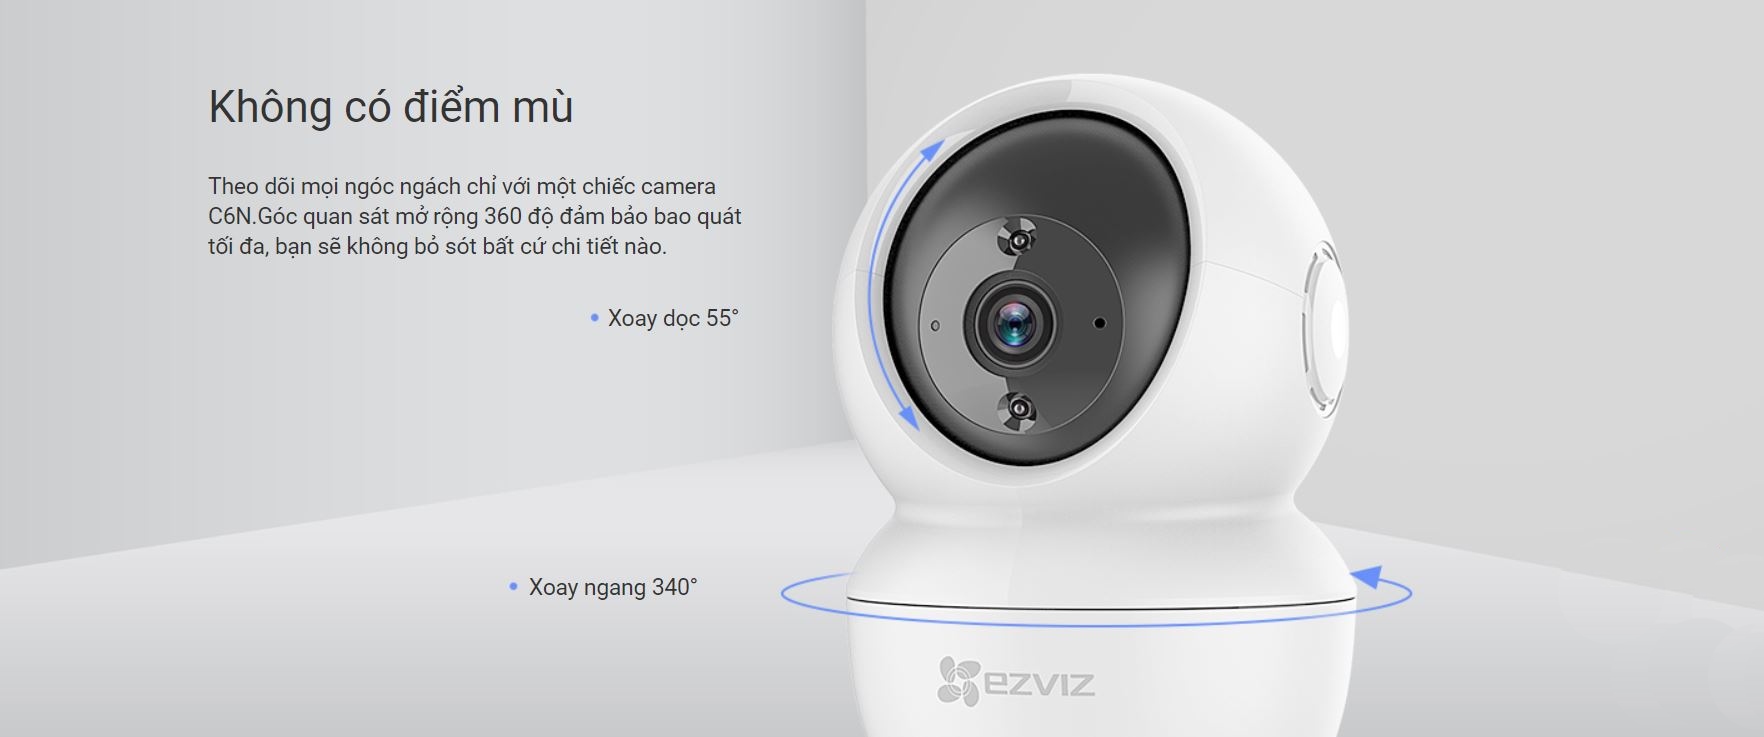 Camera EZVIZ C6N 2MP trong nhà - Góc nhìn rộng va xoay 360 độ